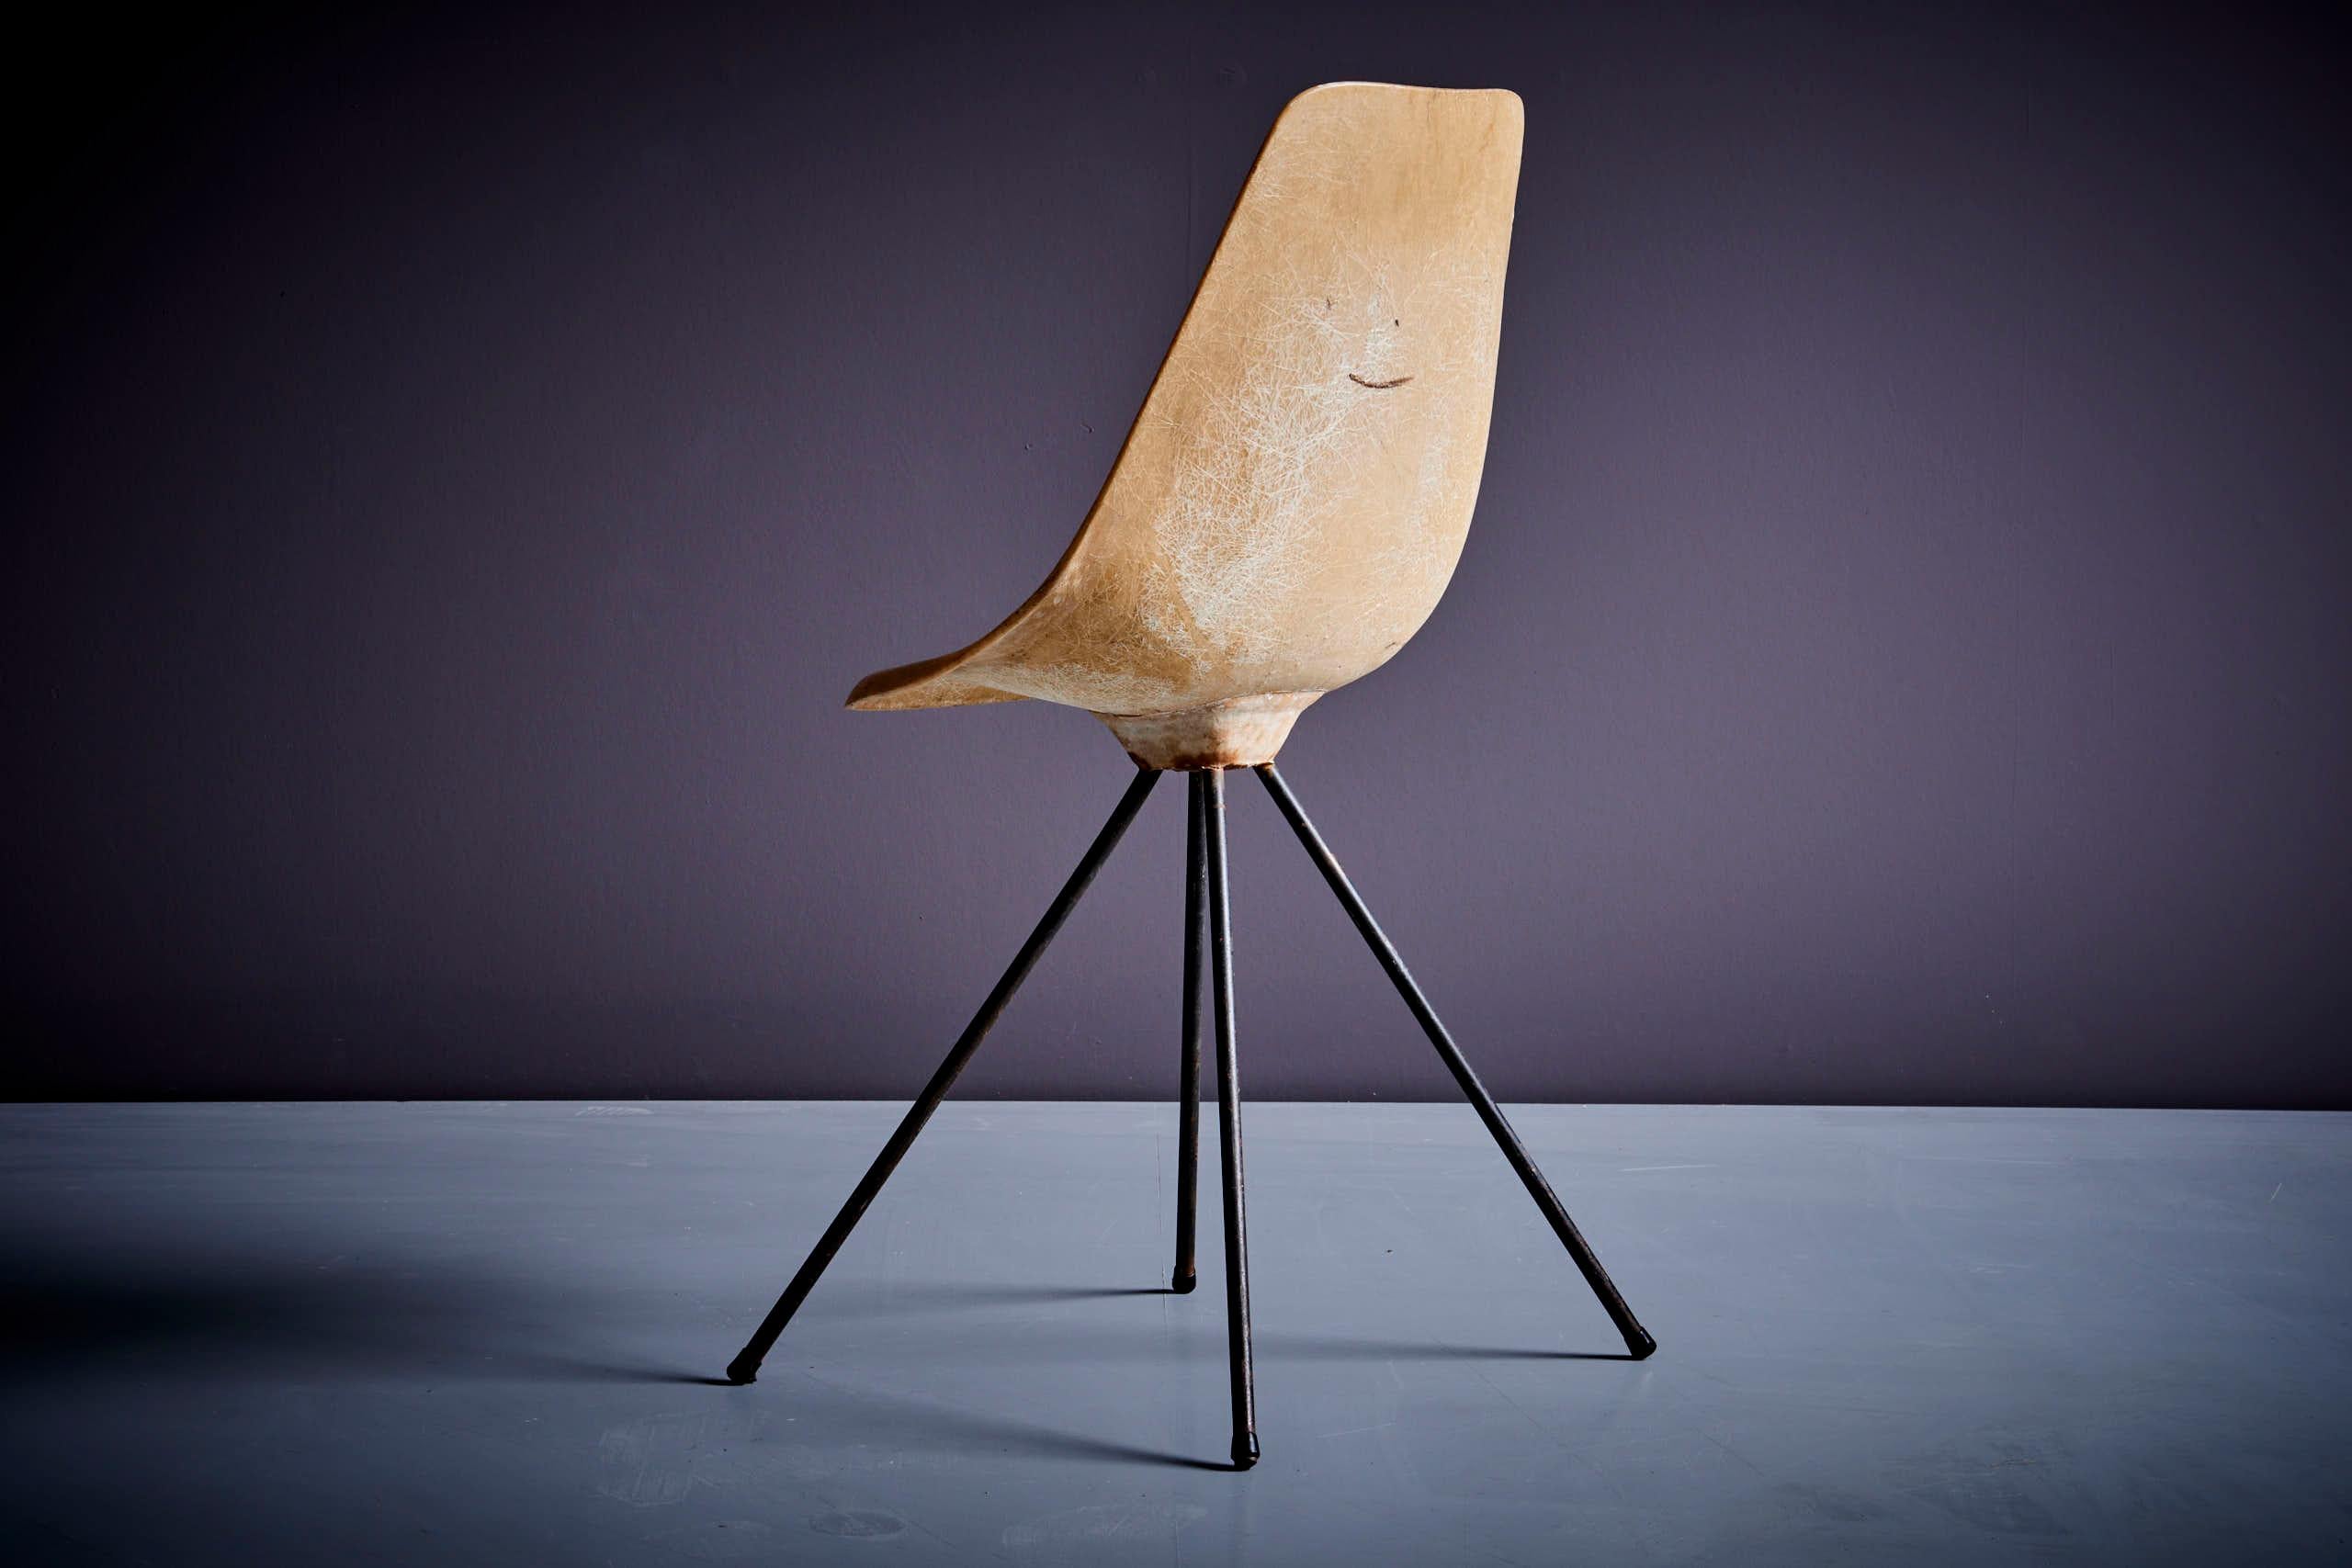 Jean-René Picard for S.E.T.A Fiberglass Chair France - 1950s For Sale 3